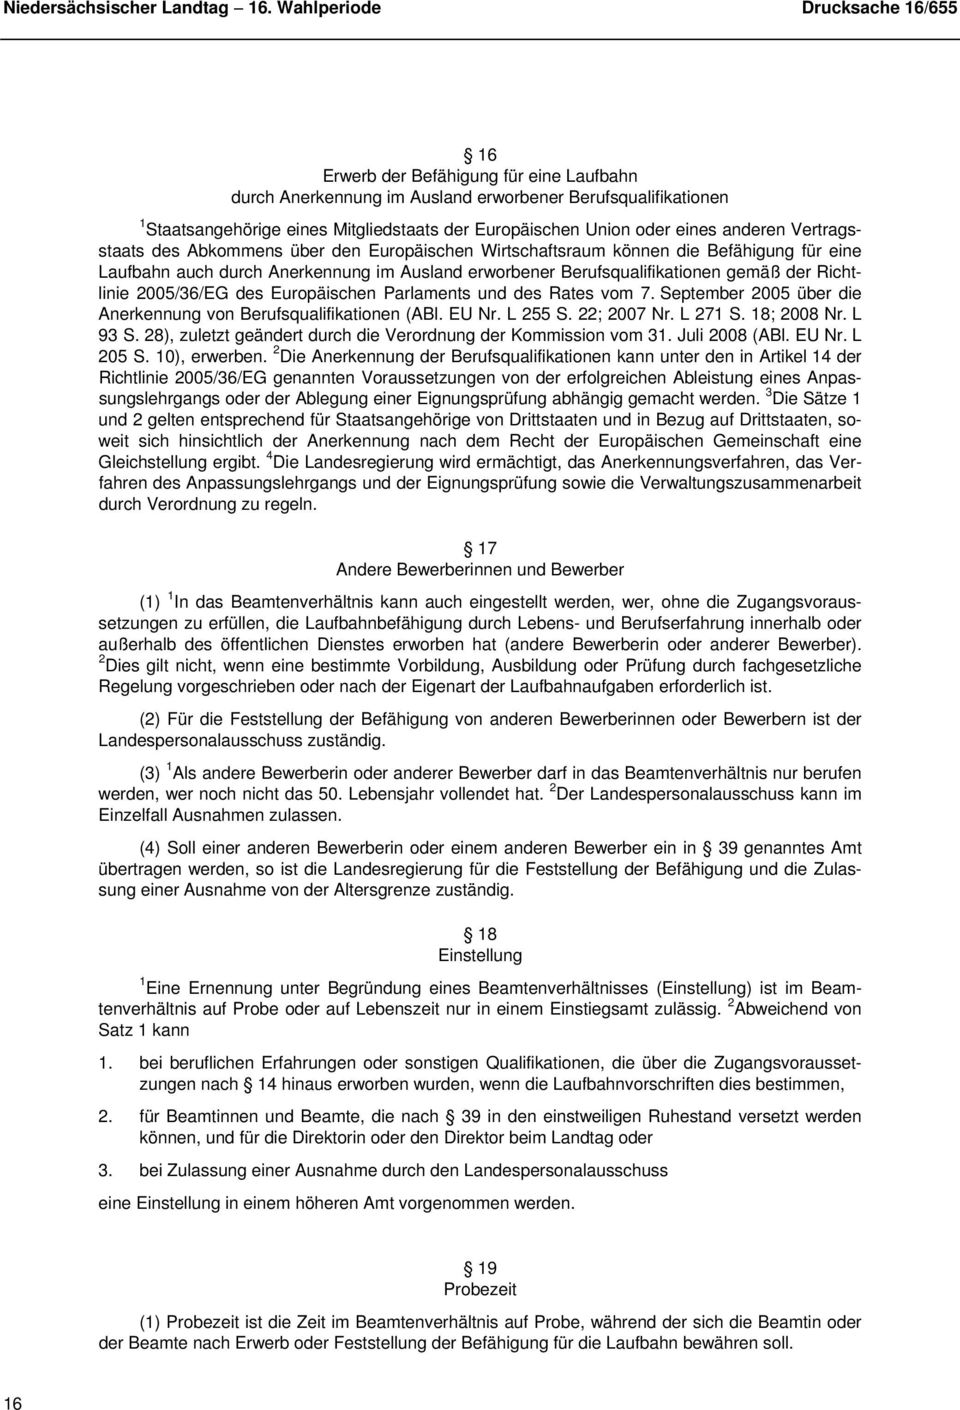 2005/36/EG des Europäischen Parlaments und des Rates vom 7. September 2005 über die Anerkennung von Berufsqualifikationen (ABl. EU Nr. L 255 S. 22; 2007 Nr. L 271 S. 18; 2008 Nr. L 93 S.